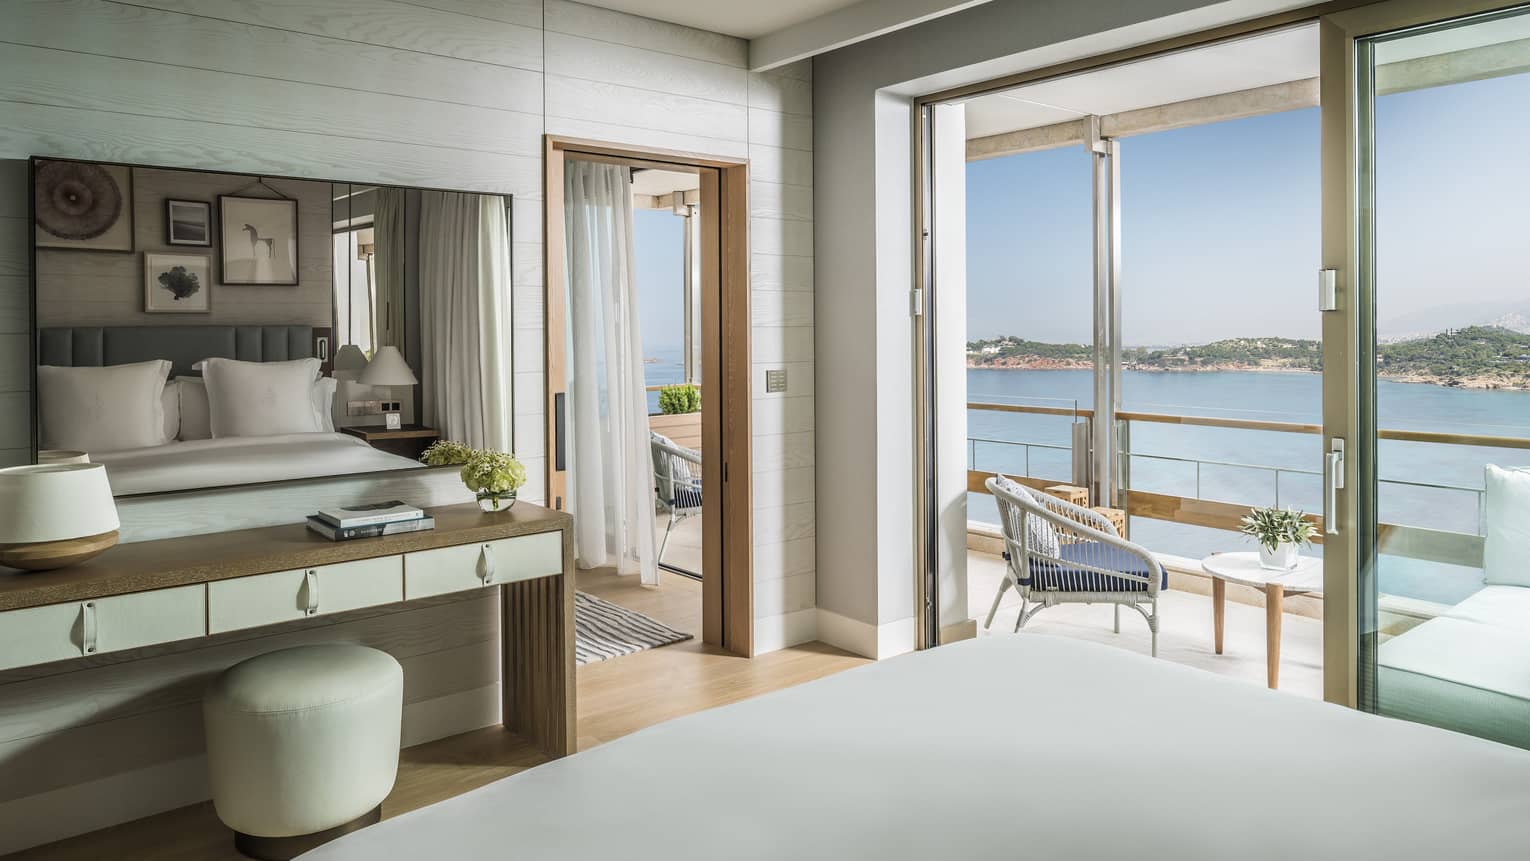 Arion Corner Suite hotel bed, tables, open balcony door with water views